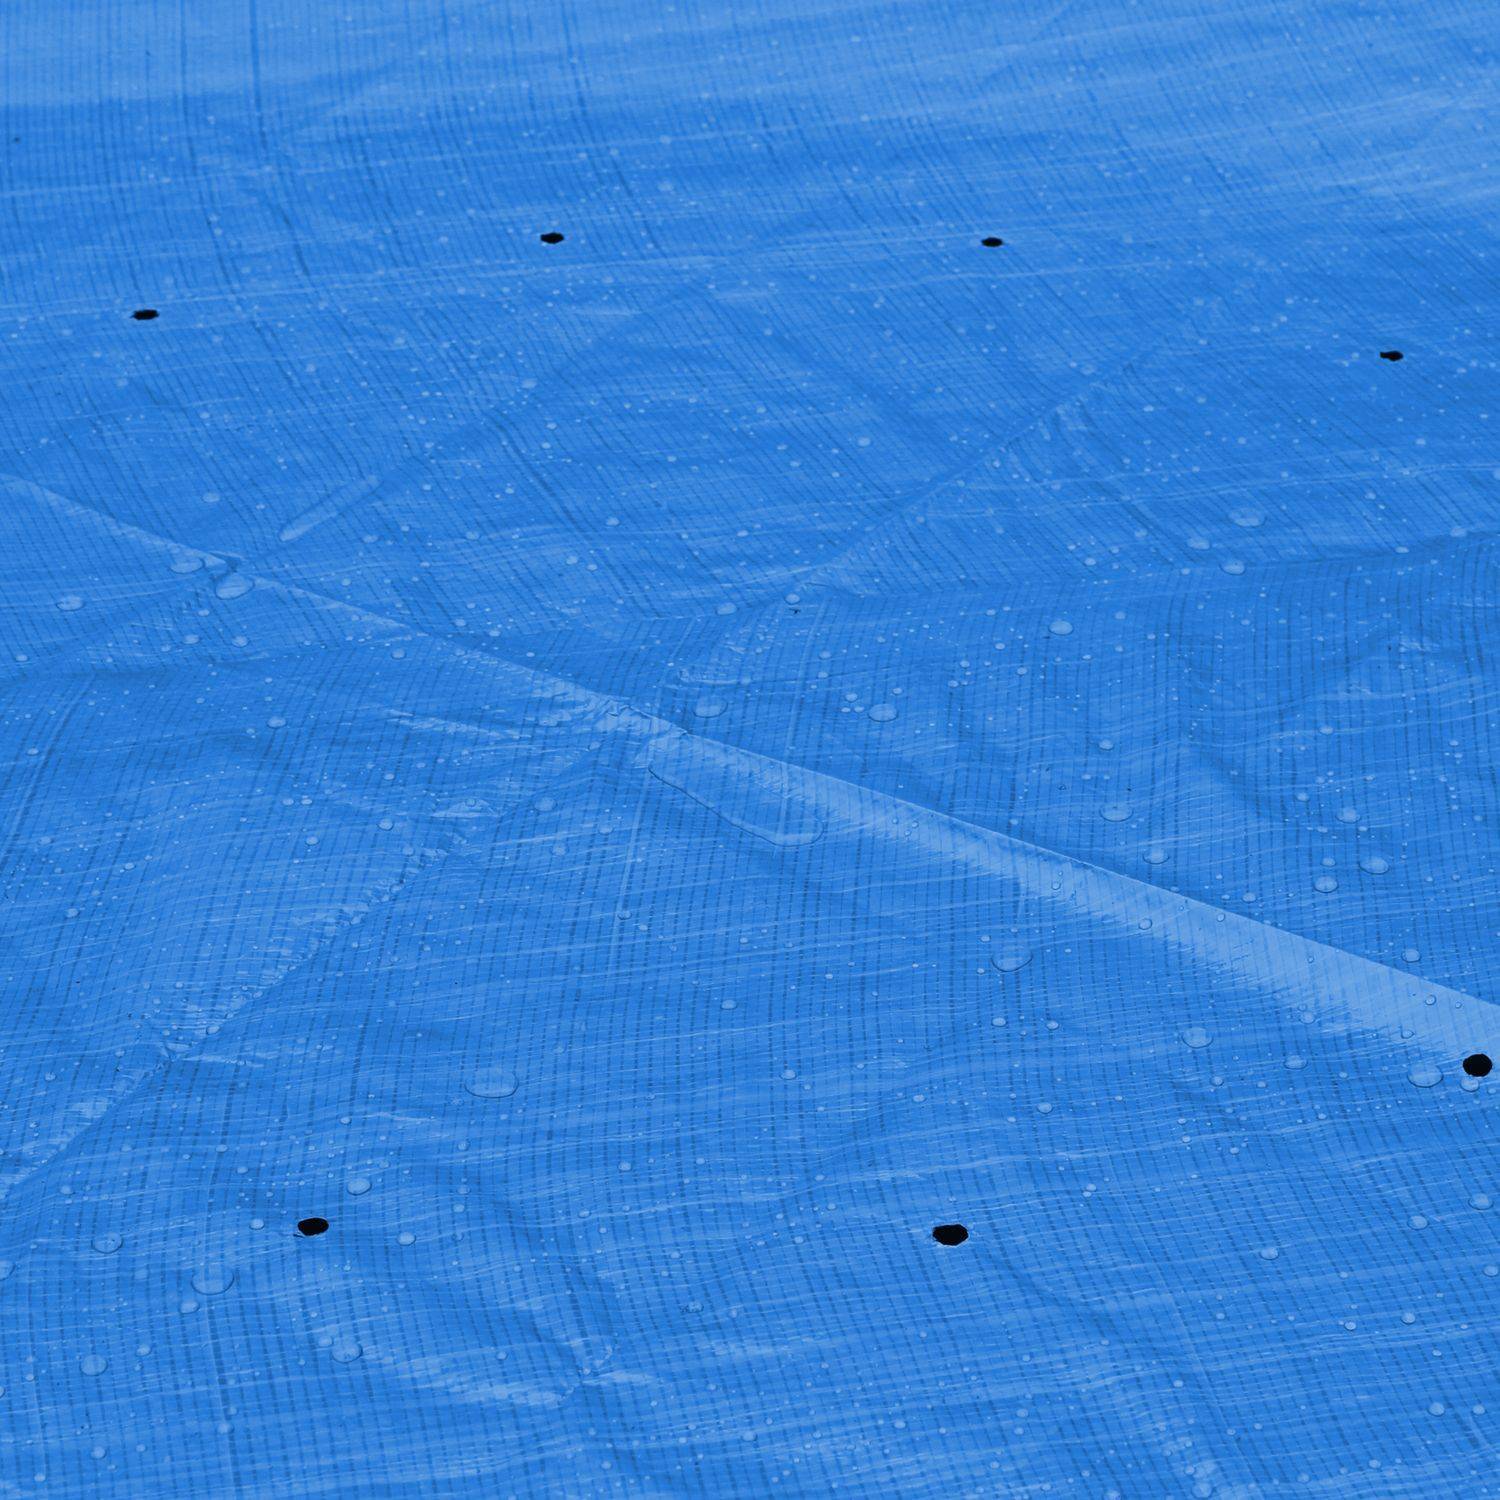  Schutzabdeckung Ø330cm für runde Aufstellpools Ø300cm, Blau, Poolabdeckung, Schutzfolie Schwimmbecken Photo3